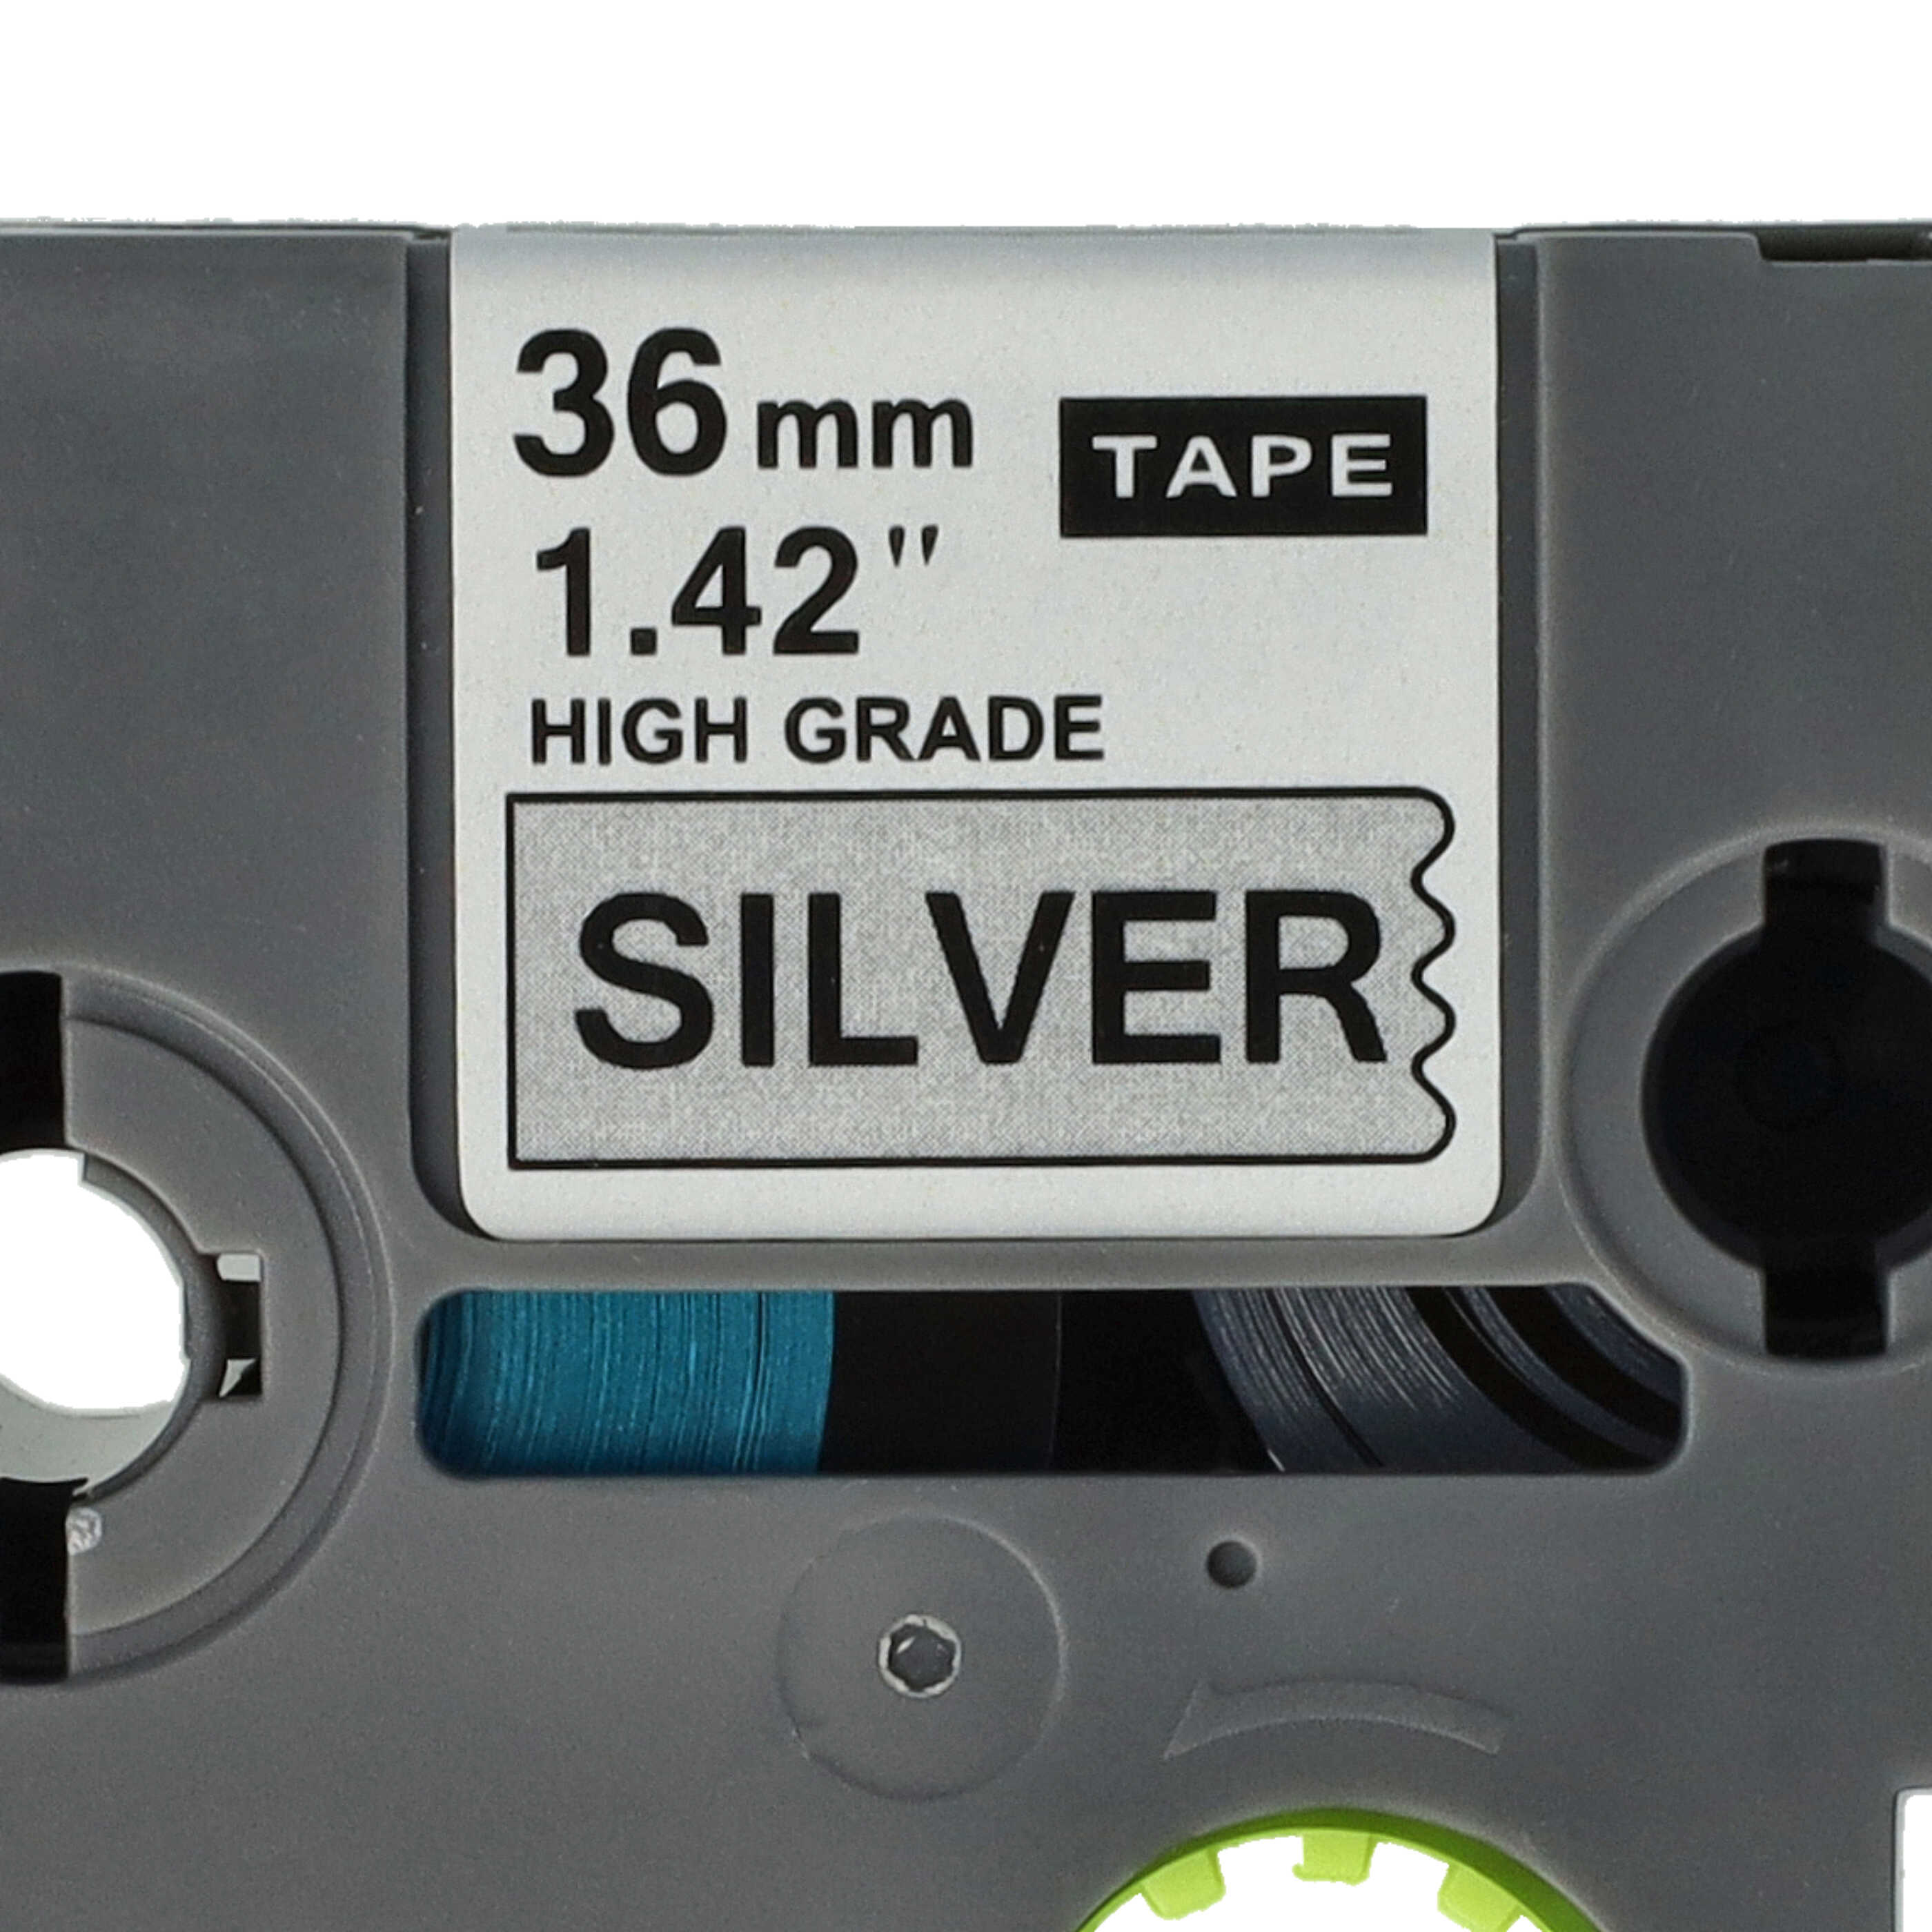 Cassetta nastro sostituisce Brother AHe-S961 per etichettatrice Brother 36mm nero su argentato, extra forte